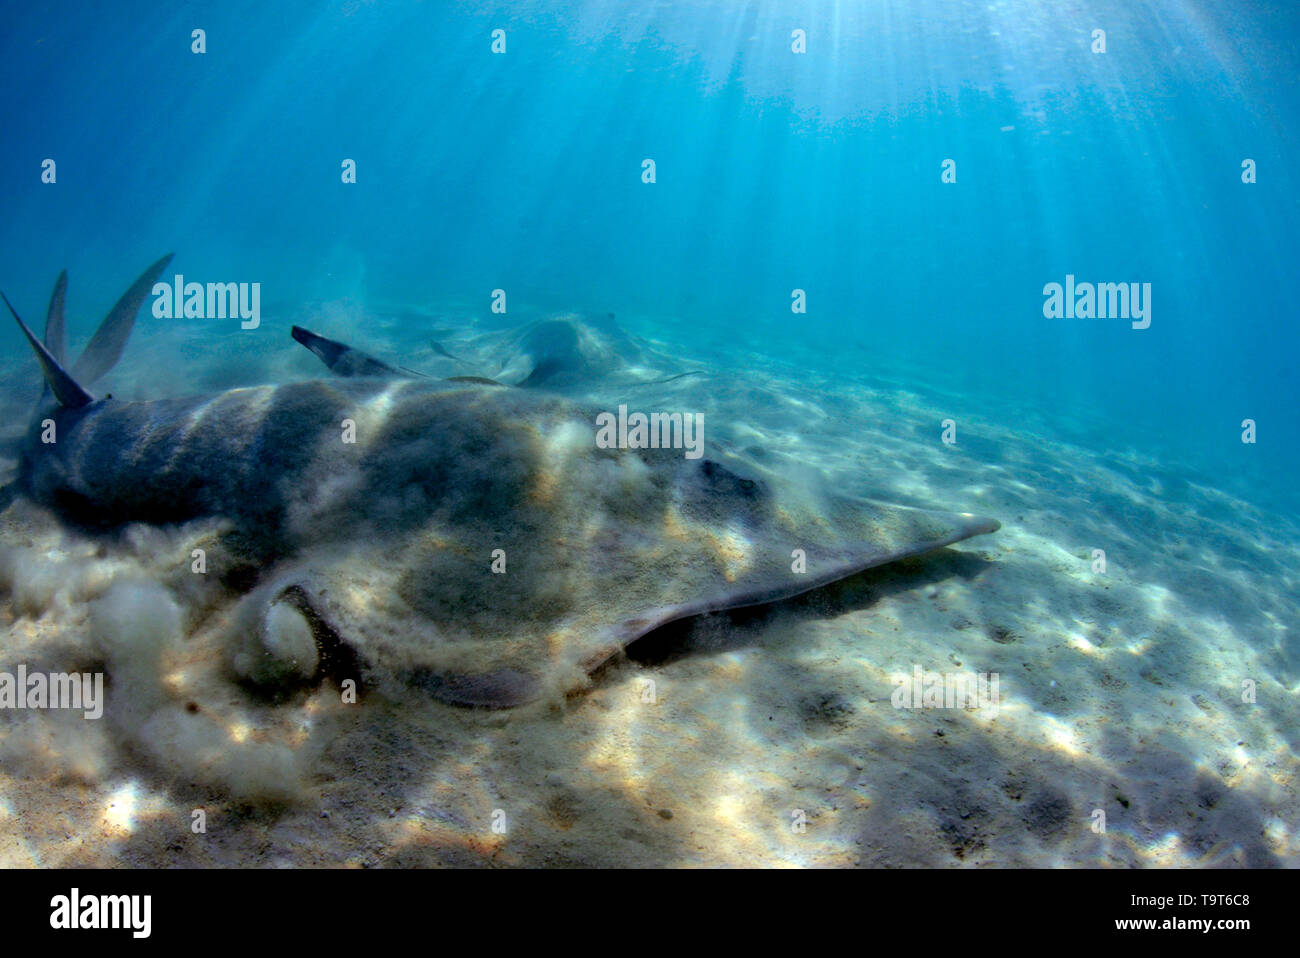 Pelle géante-nosed ray, Rhinobatos types, dans les eaux peu profondes au large de la baie Shark, Heron Island, Grande Barrière de Corail, Queensland, Australie Banque D'Images